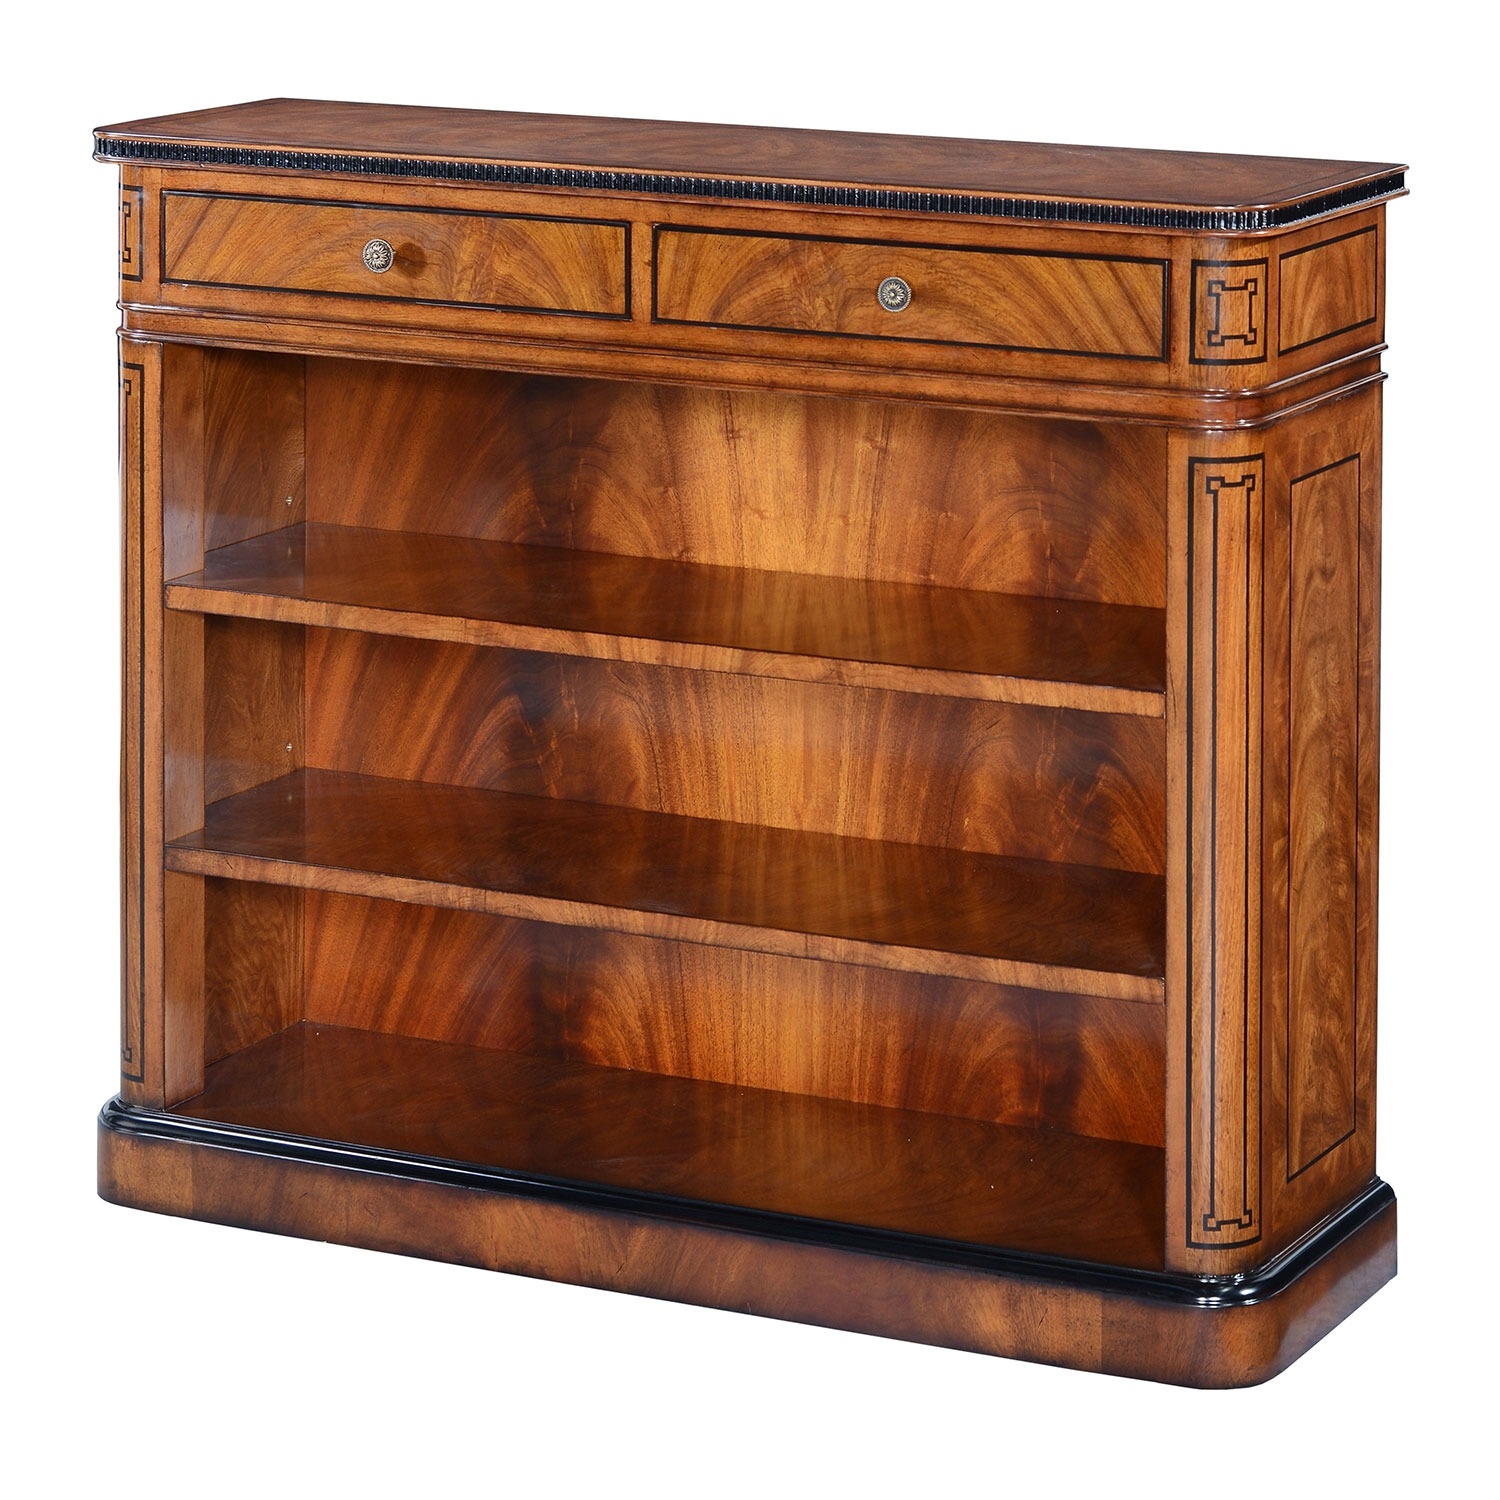 Thomas Hope style mahogany & ebonised open bookcase – 42in